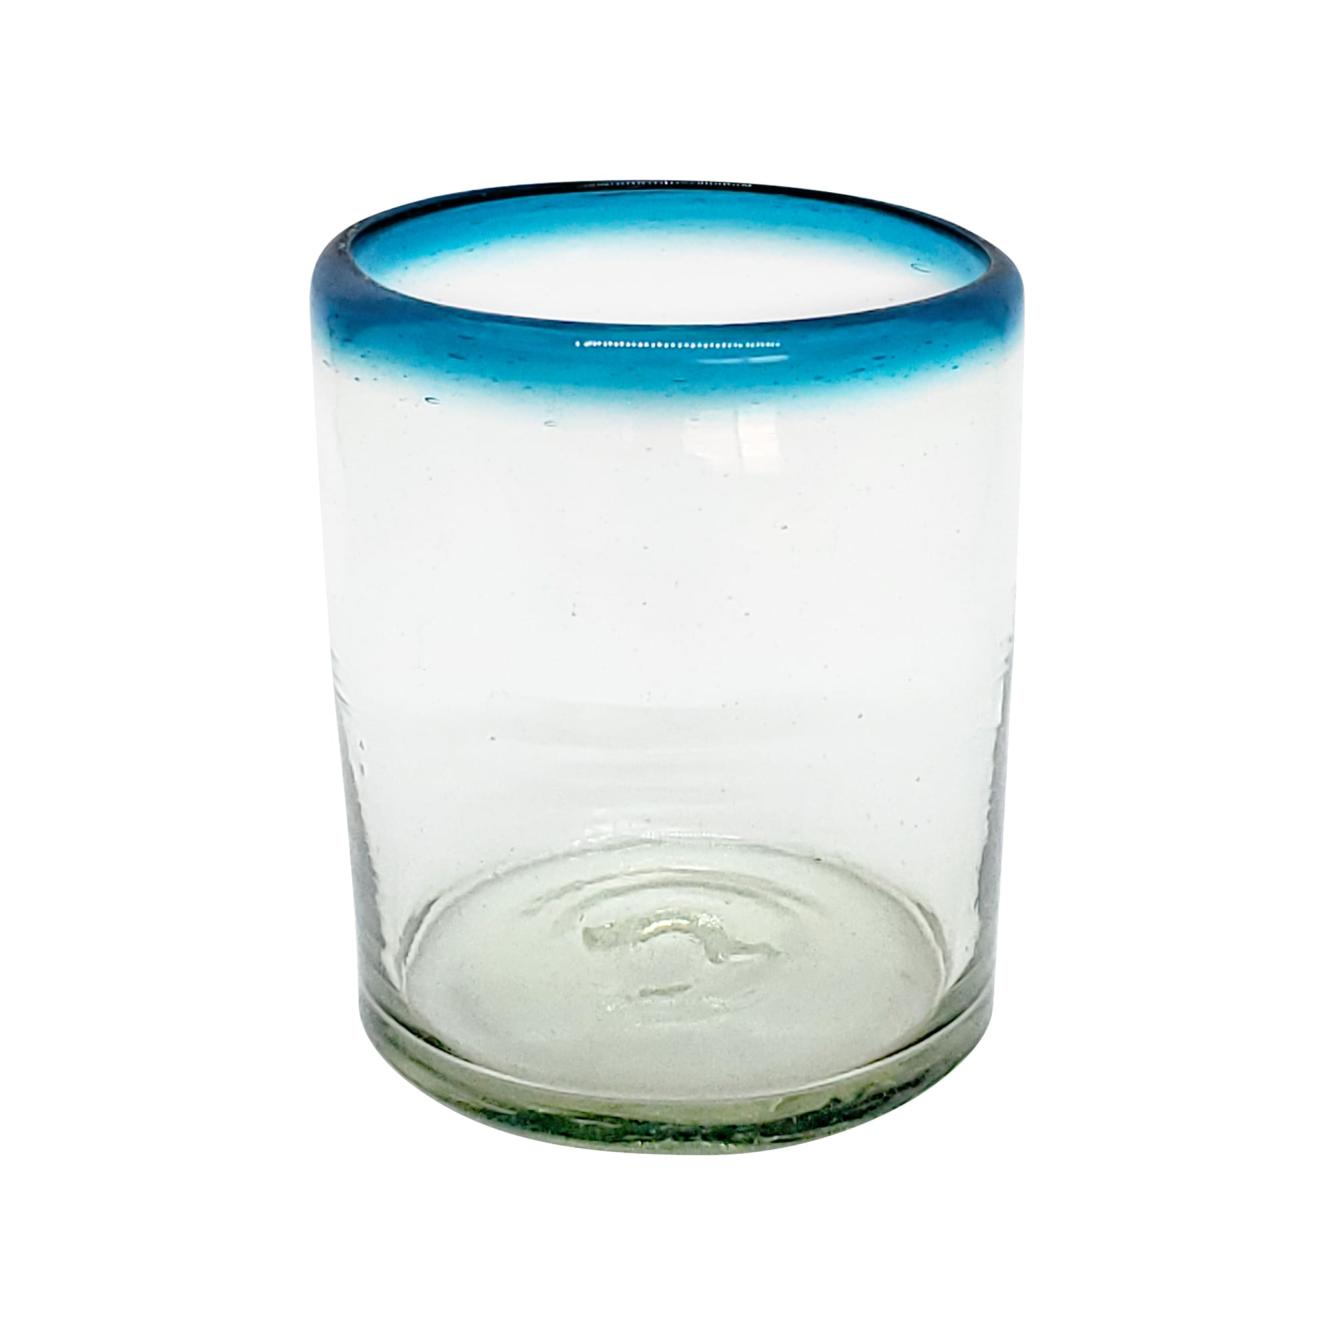 Ofertas / Juego de 6 vasos chicos con borde azul aqua, 10 oz, Vidrio Reciclado, Libre de Plomo y Toxinas / stos vasos chicos son un gran complemento para su juego de jarra y vasos grandes.